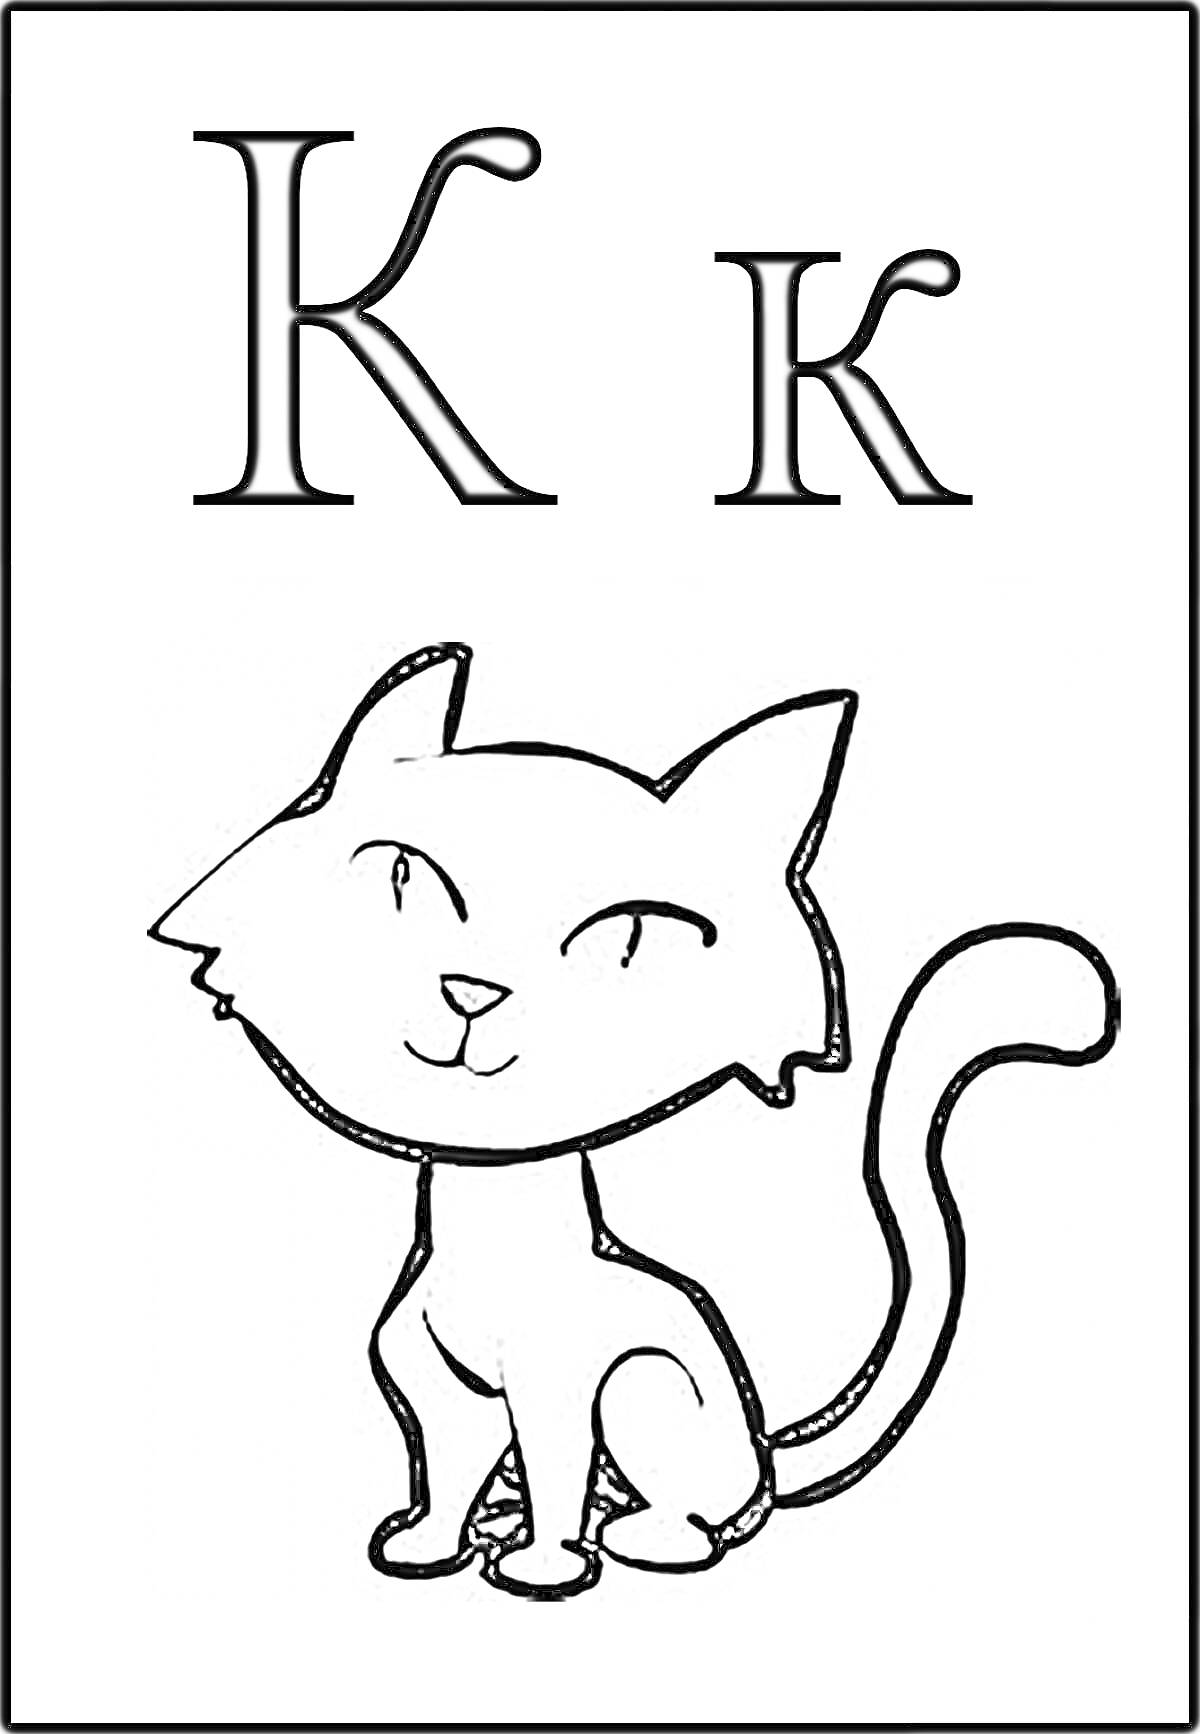 Раскраска Буква К, к и кот